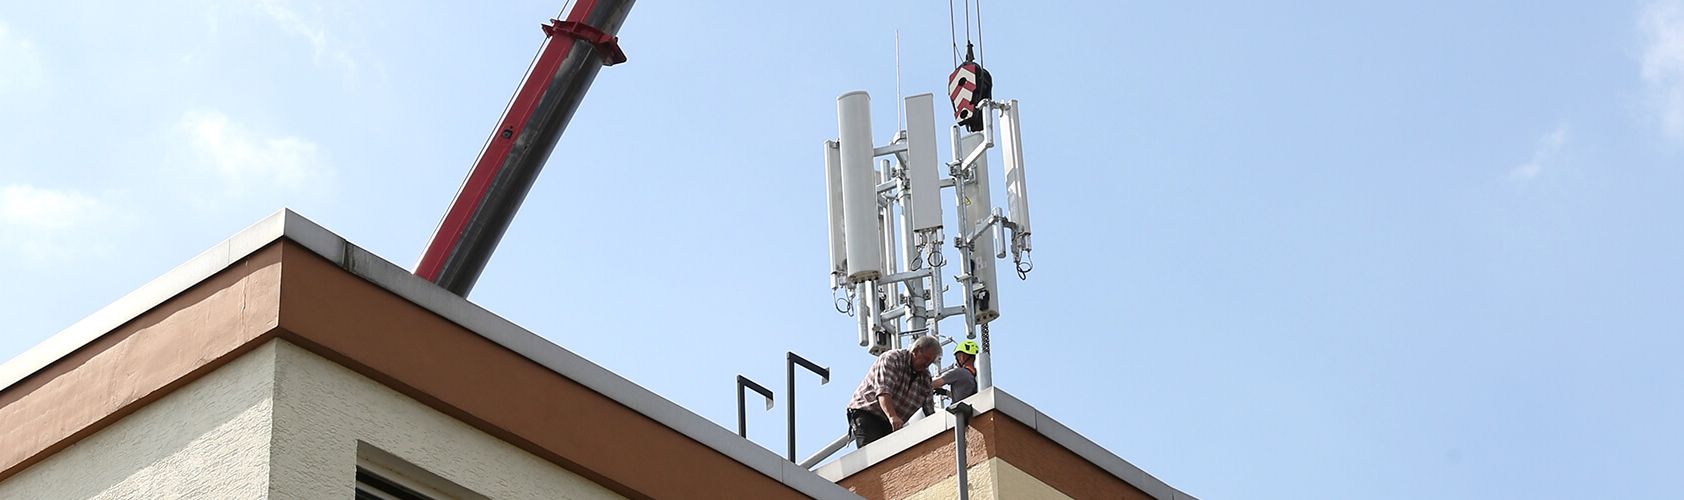 Techniker bauen Mobilfunkantennen auf einem Hausdach auf